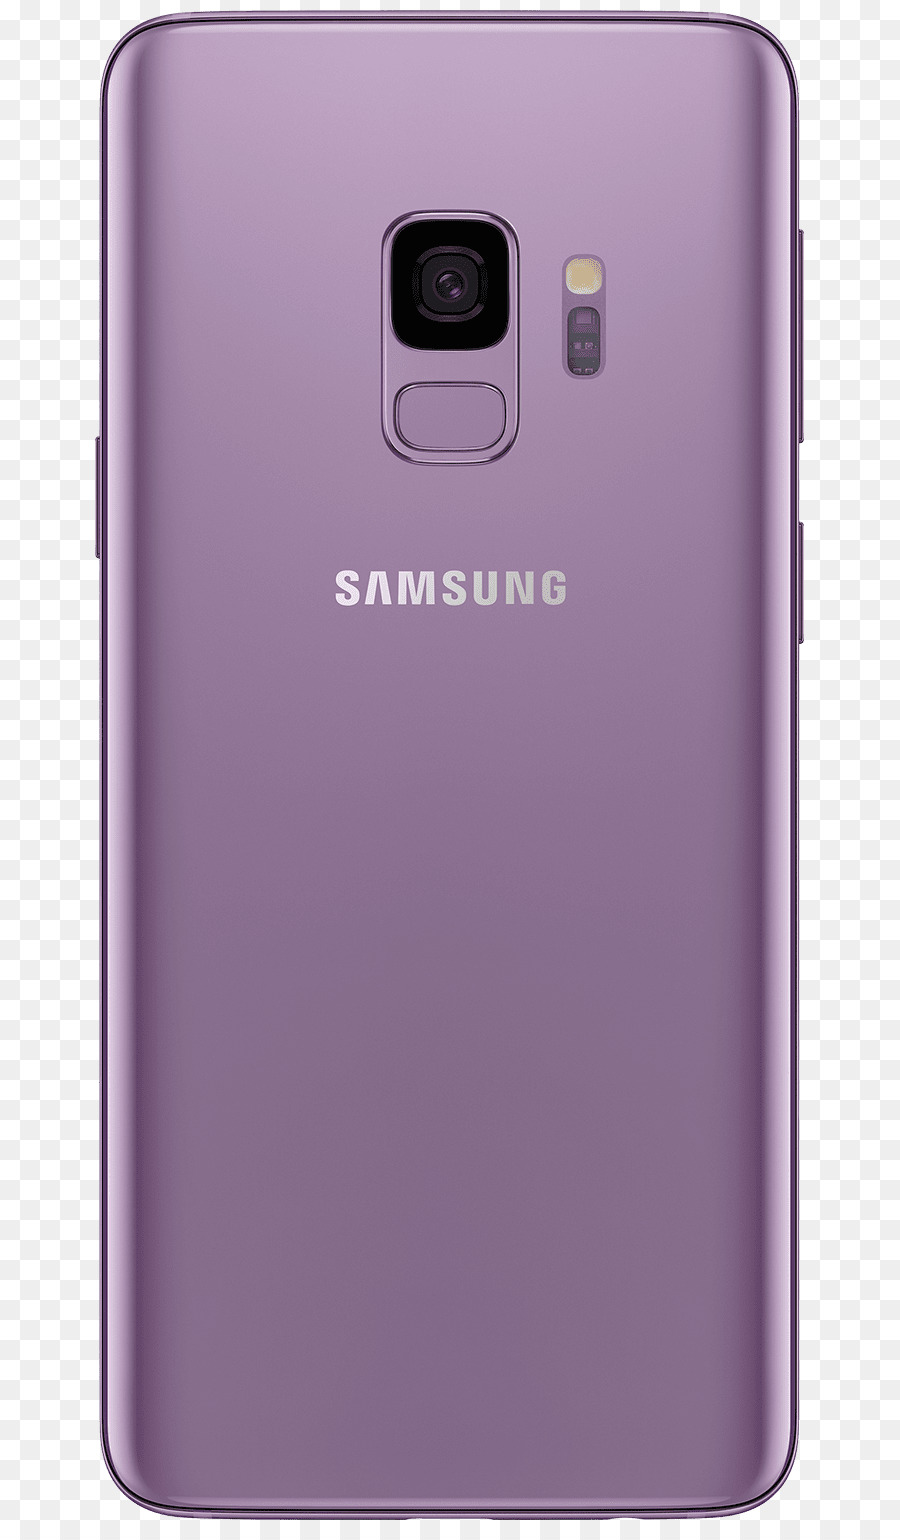 Samsung Galaxy S9 64 Gb Color Lila Púrpura Gsm Desbloqueado，Samsung Galaxy S9 64 Gb Color Lila Púrpura Desbloqueado PNG